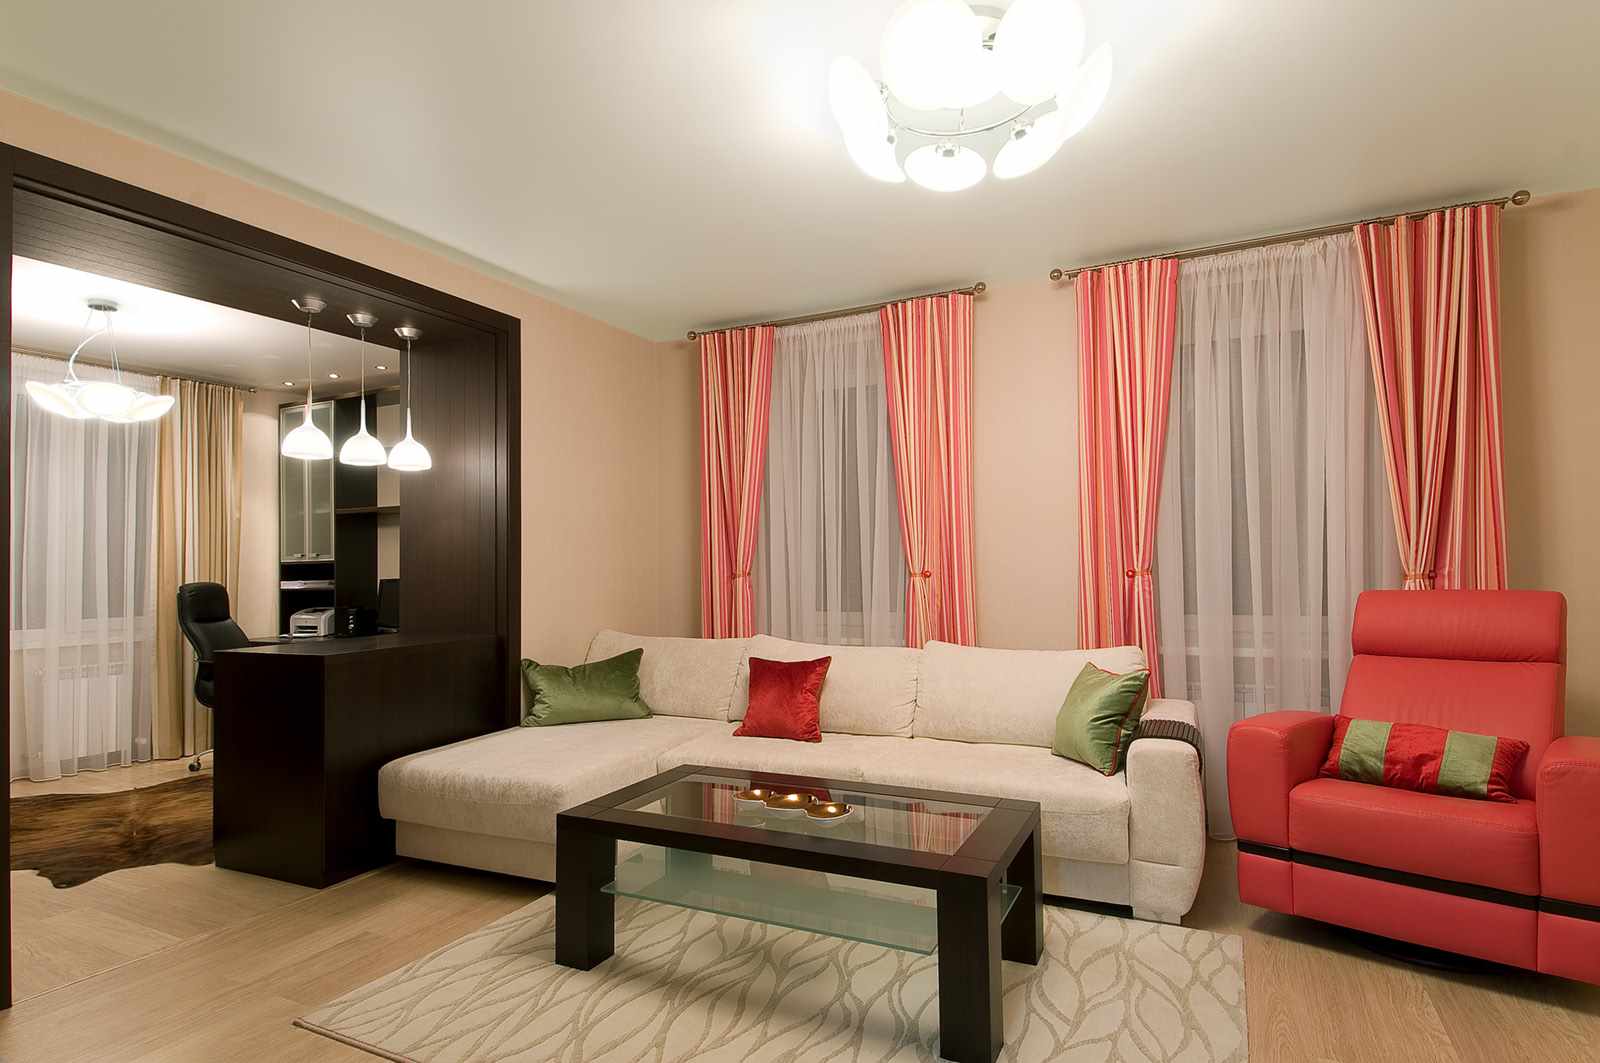 19-20 m2'lik bir oturma odasının güzel bir iç mekanına bir örnek